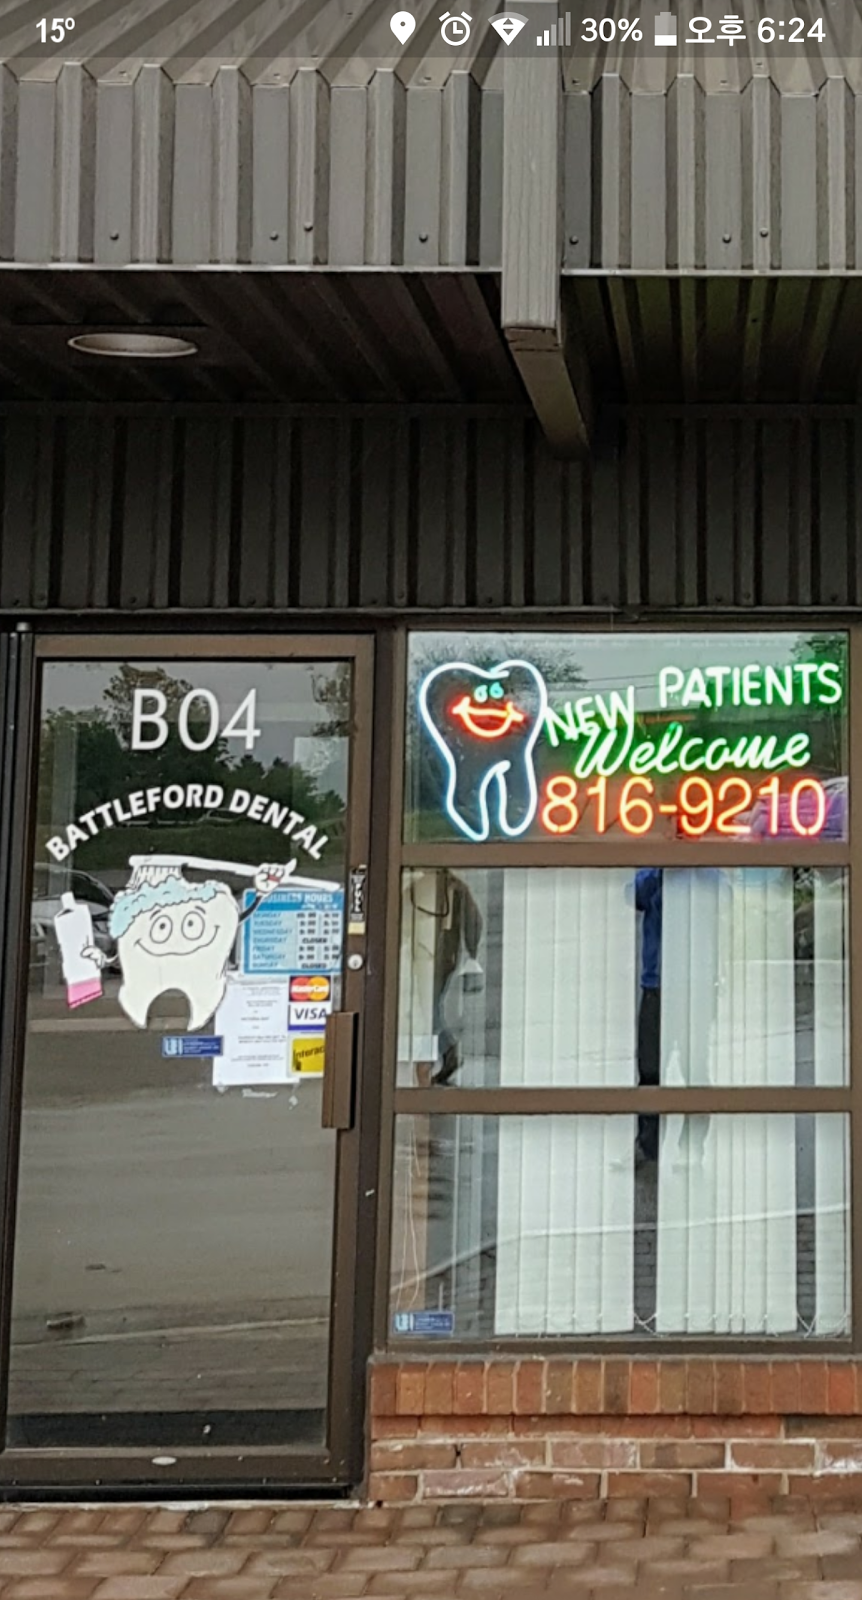 Battleford Dental | dentist | 6415 Erin Mills Pkwy UNIT B4, Mississauga, ON L5N 4H4, Canada | 9058169210 OR +1 905-816-9210